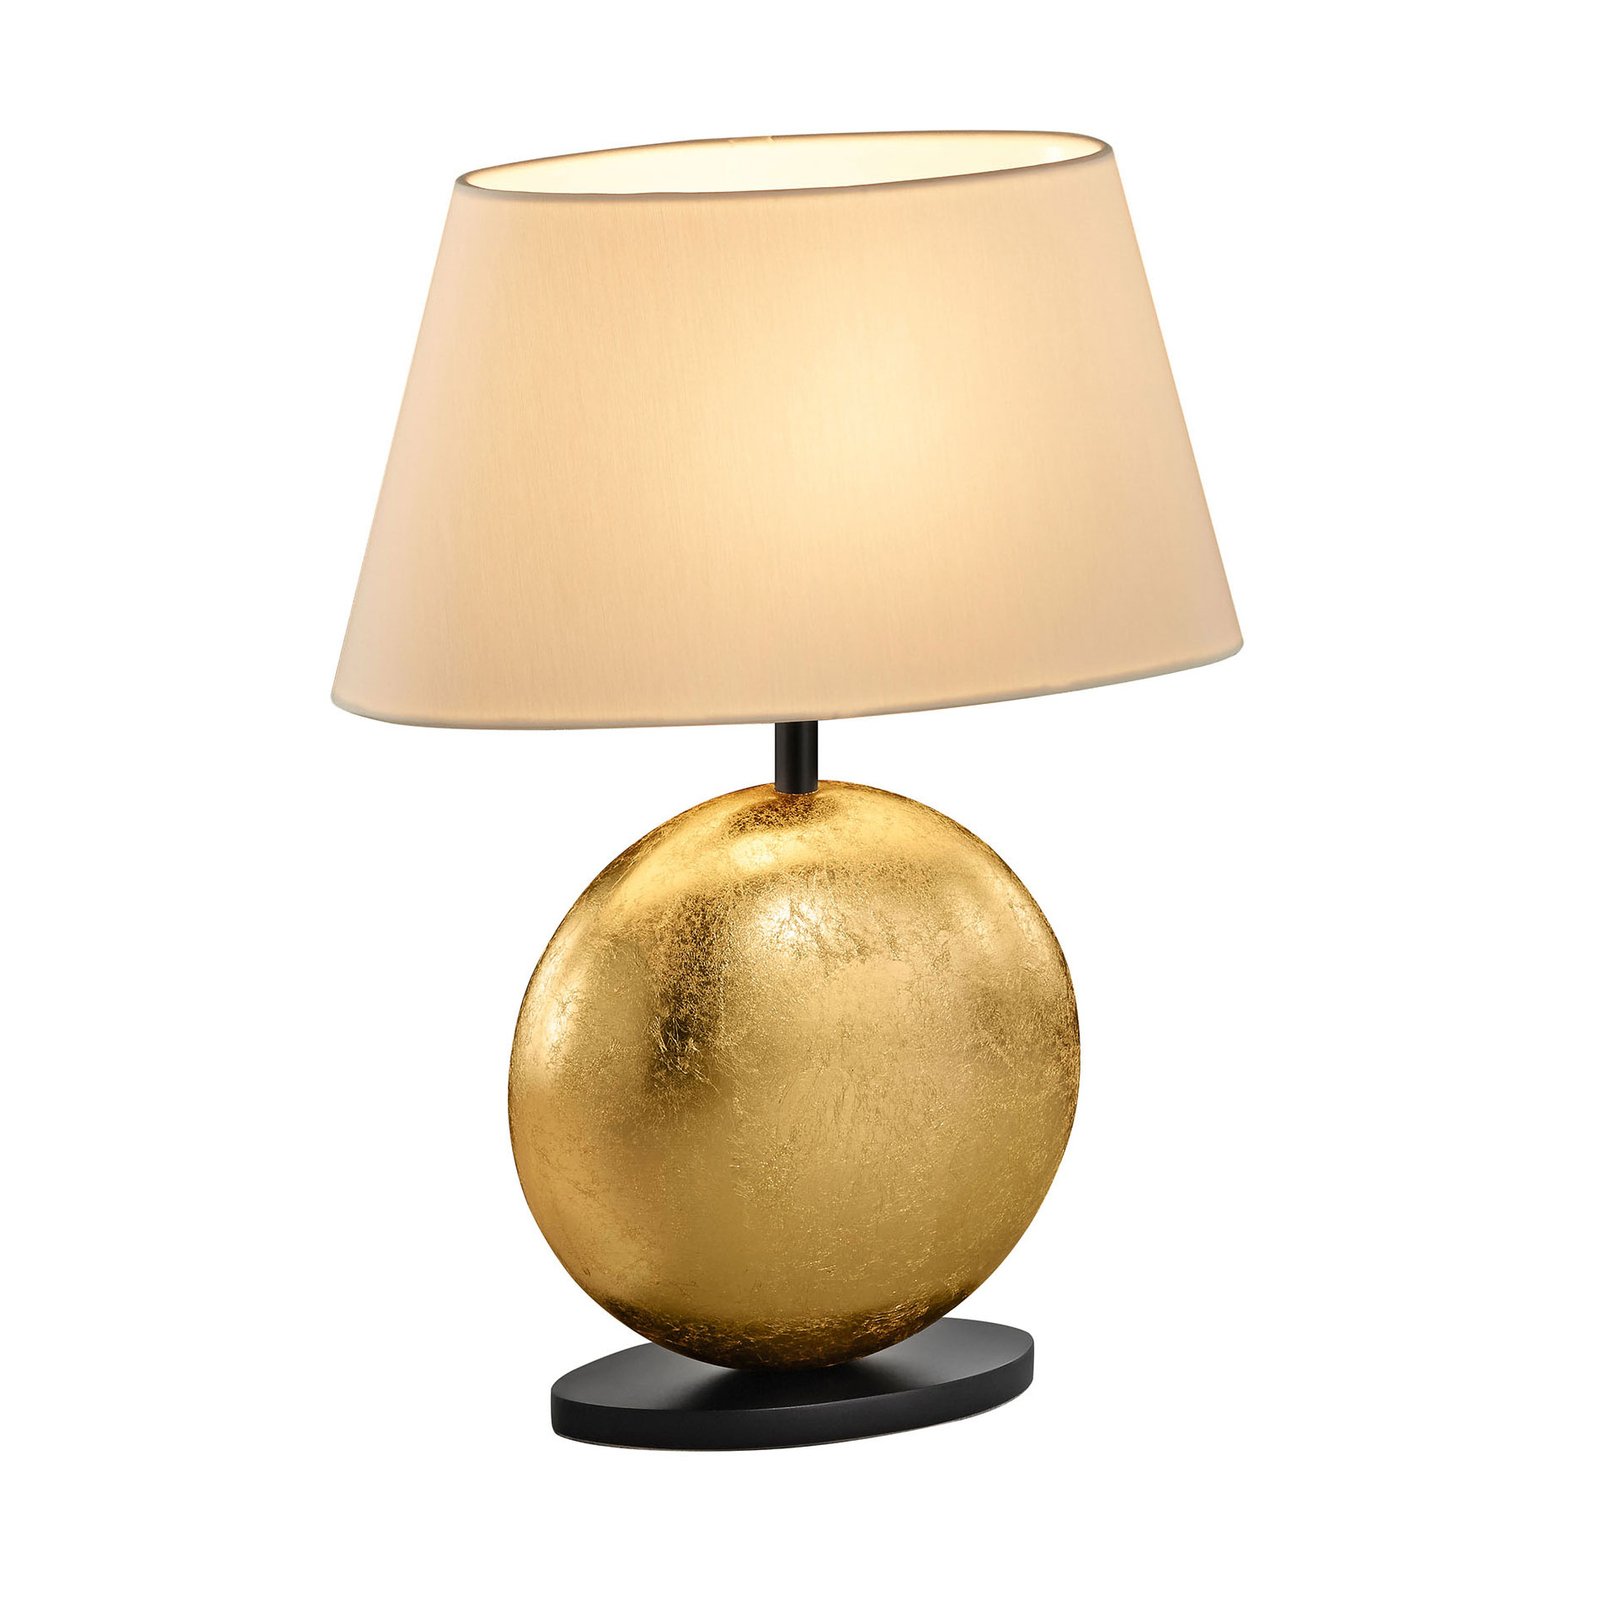 BANKAMP Mali lampa stołowa, kremowa/złota, 41cm